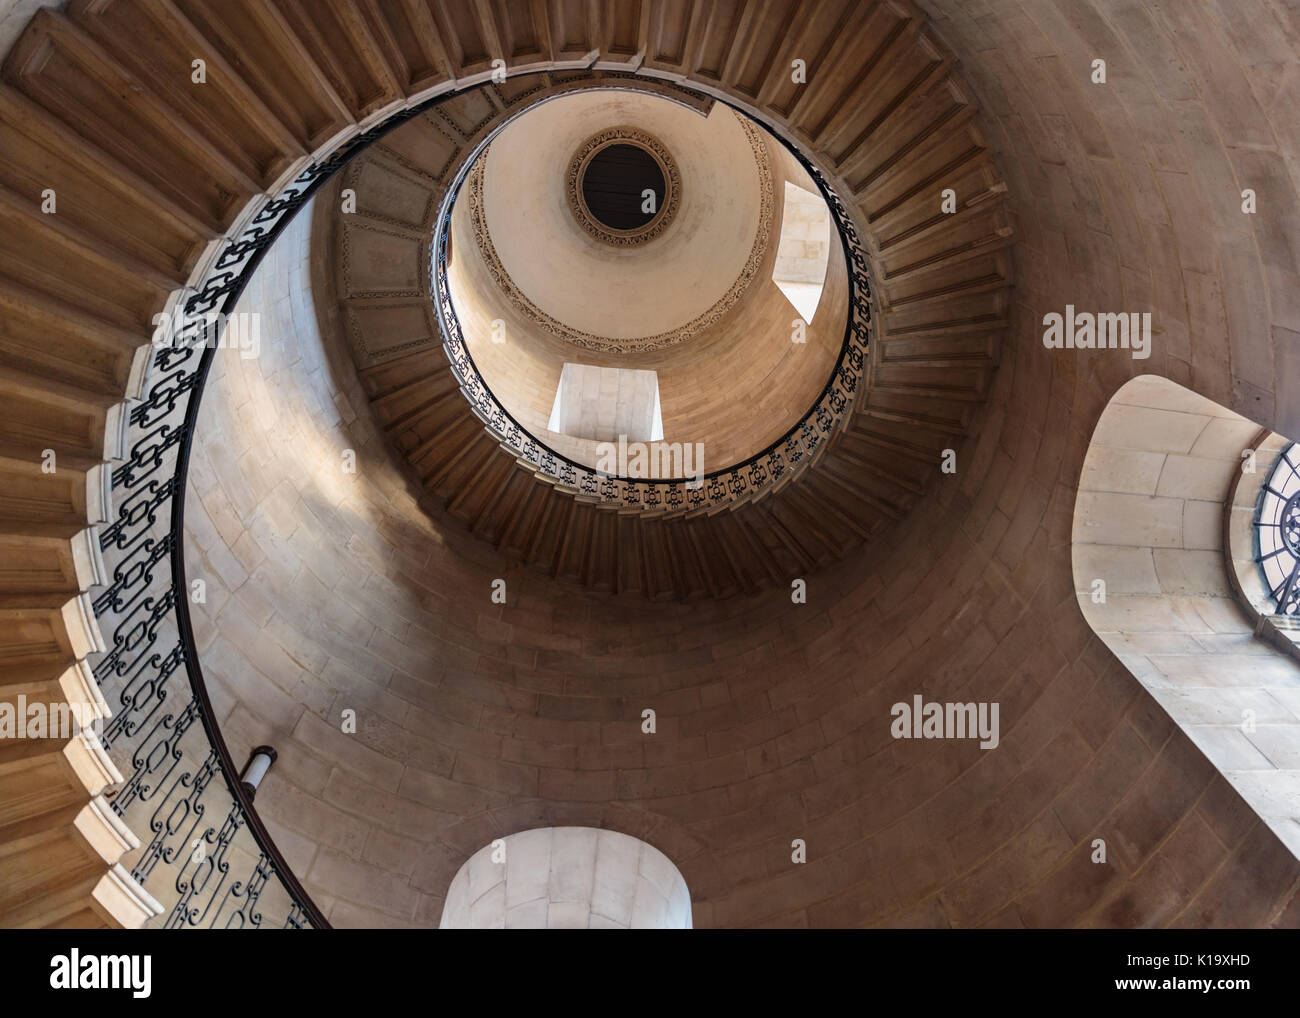 Die Dean's Staircase, St Paul's Cathedral, Wendeltreppe, berühmt gemacht als die Divination Stairwell in Szenen aus den Harry Potter Filmen, London UK Stockfoto